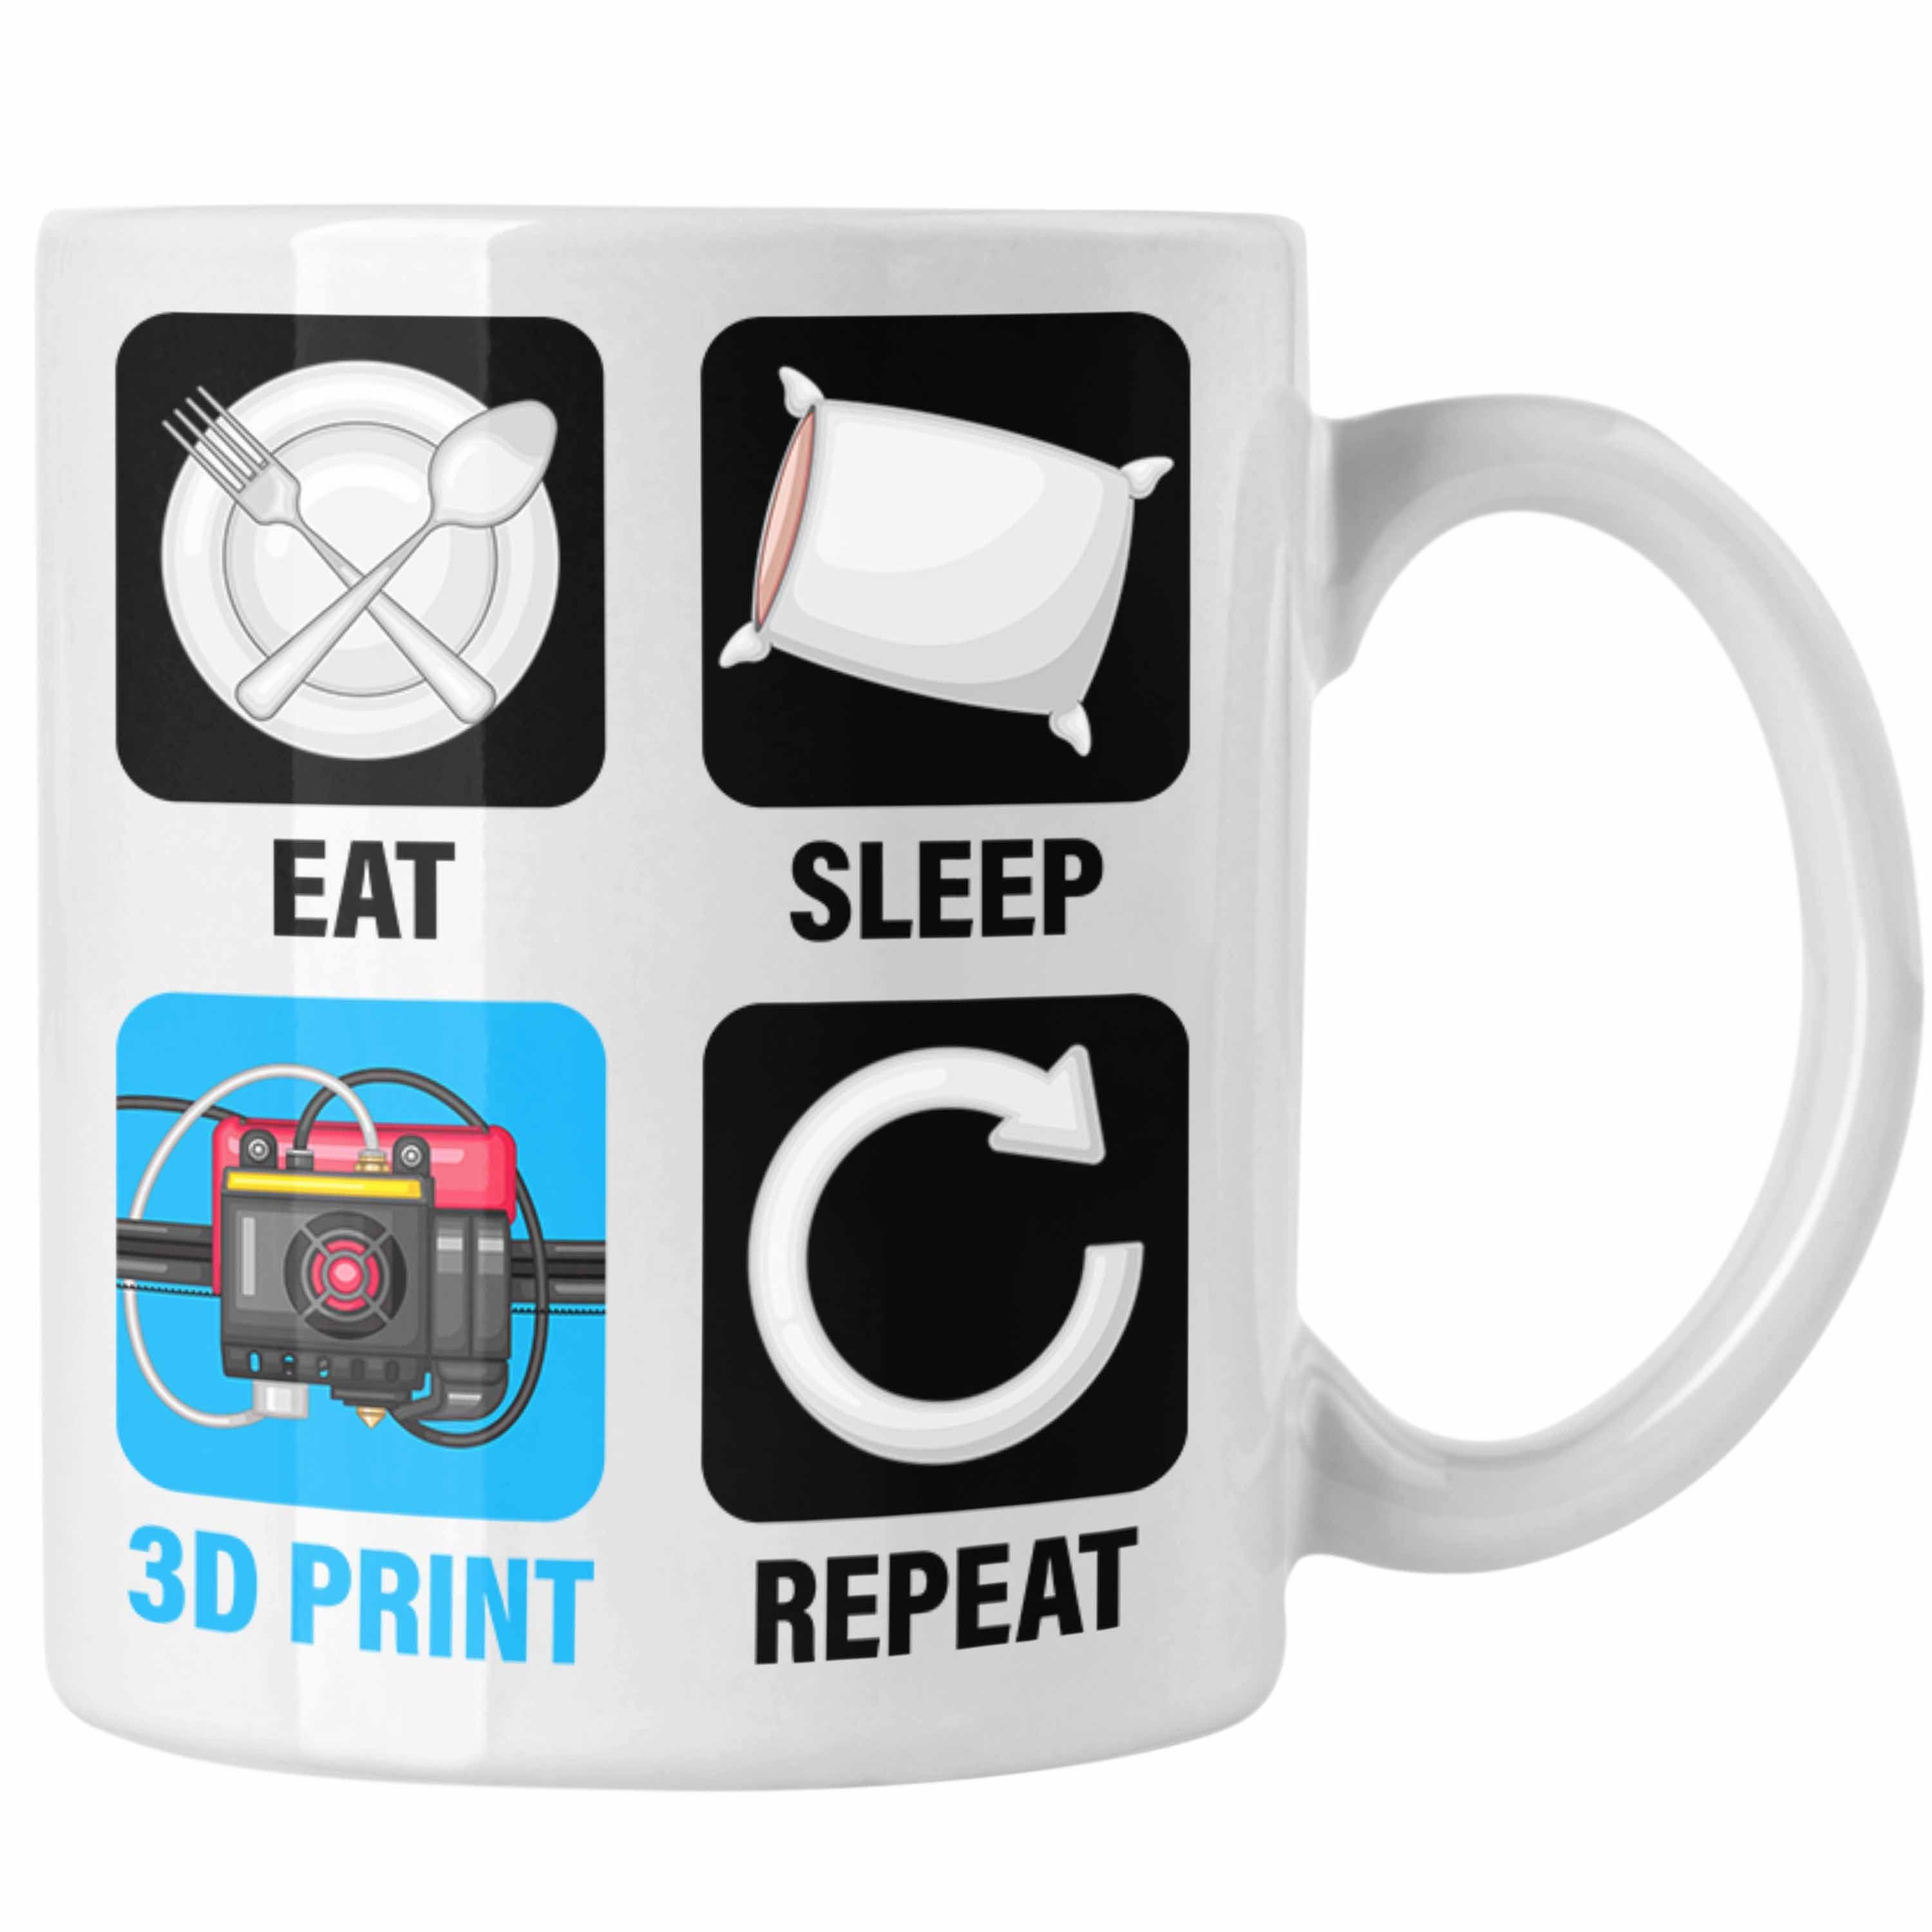 Trendation Tasse 3D Drucker Tasse Geschenk für 3D Printing Eat Sleep 3D Print Repeat Mä Weiss